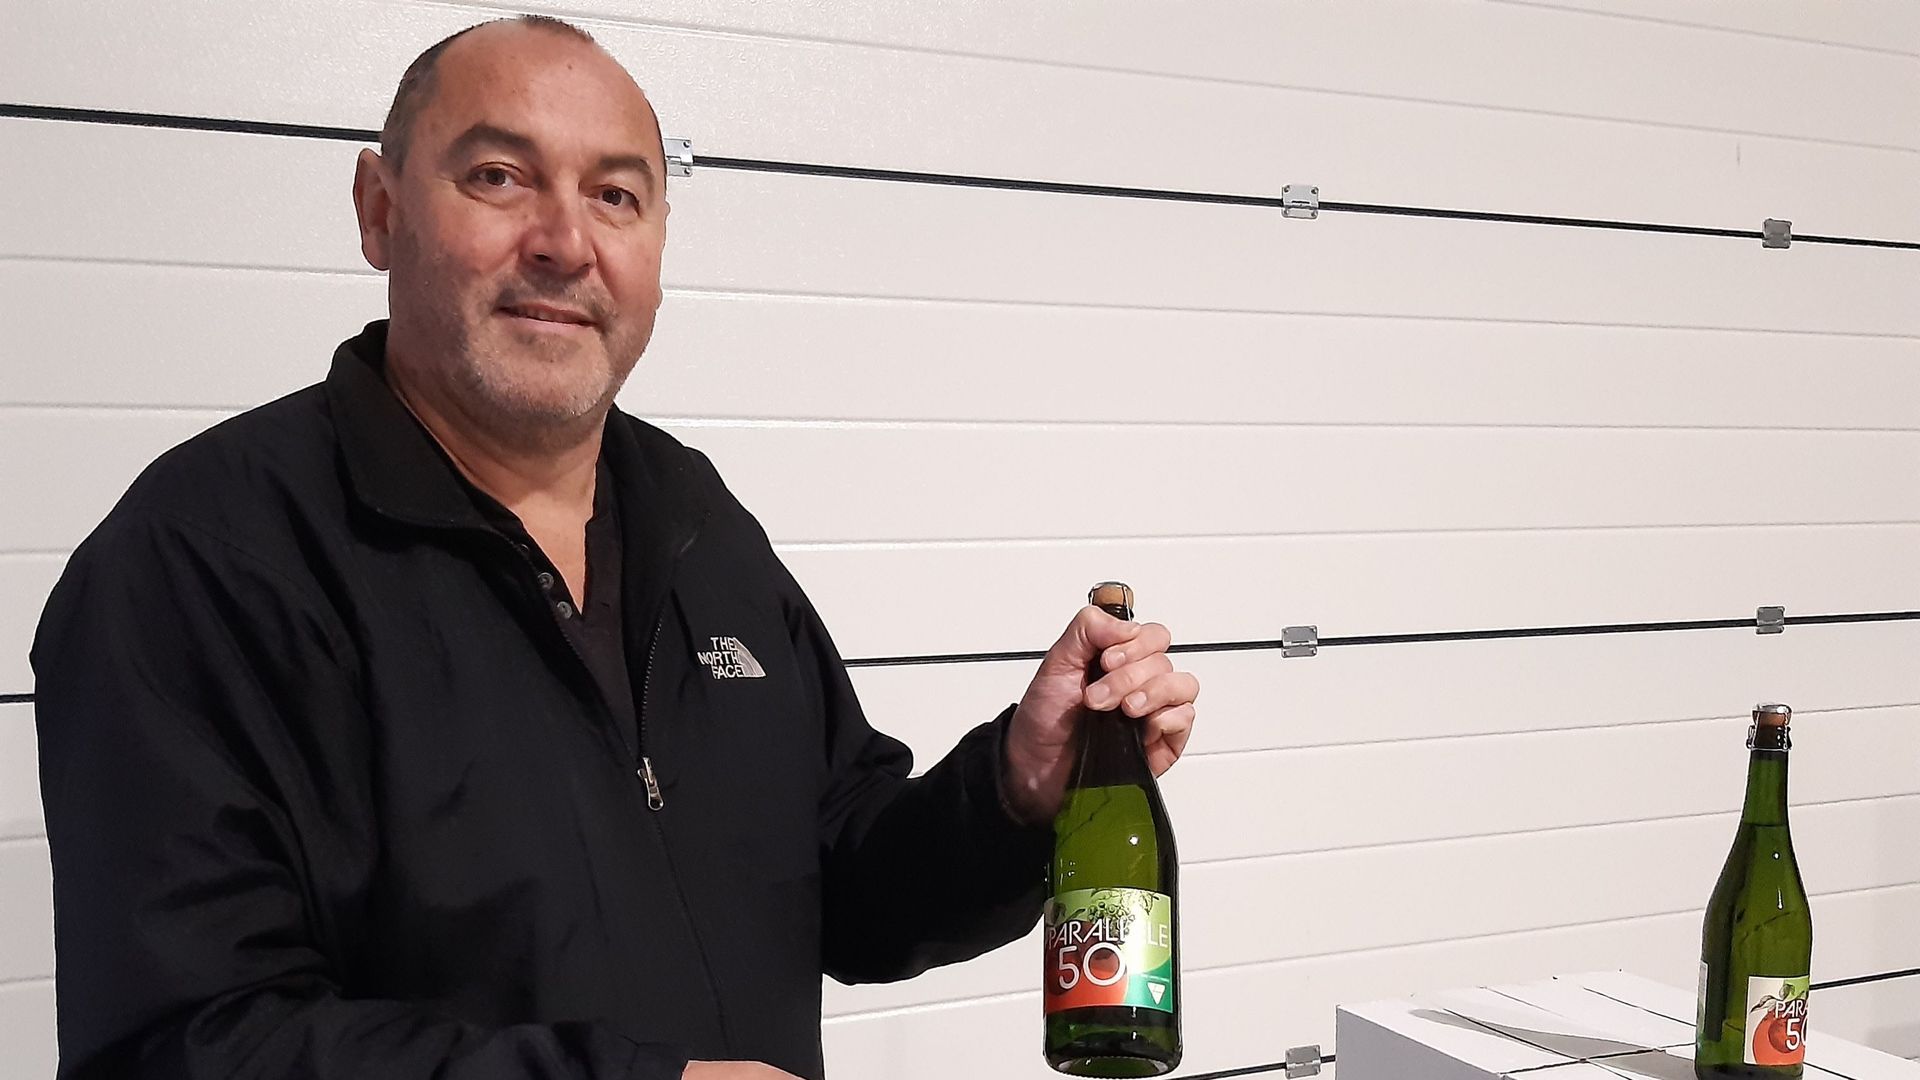 Michel Schoonbroodt, le Directeur de la Coopérative Vin du Pays de Herve, heureux de présenter son nouveau cidre "Parallèle 50" fait de pommes et raisins.